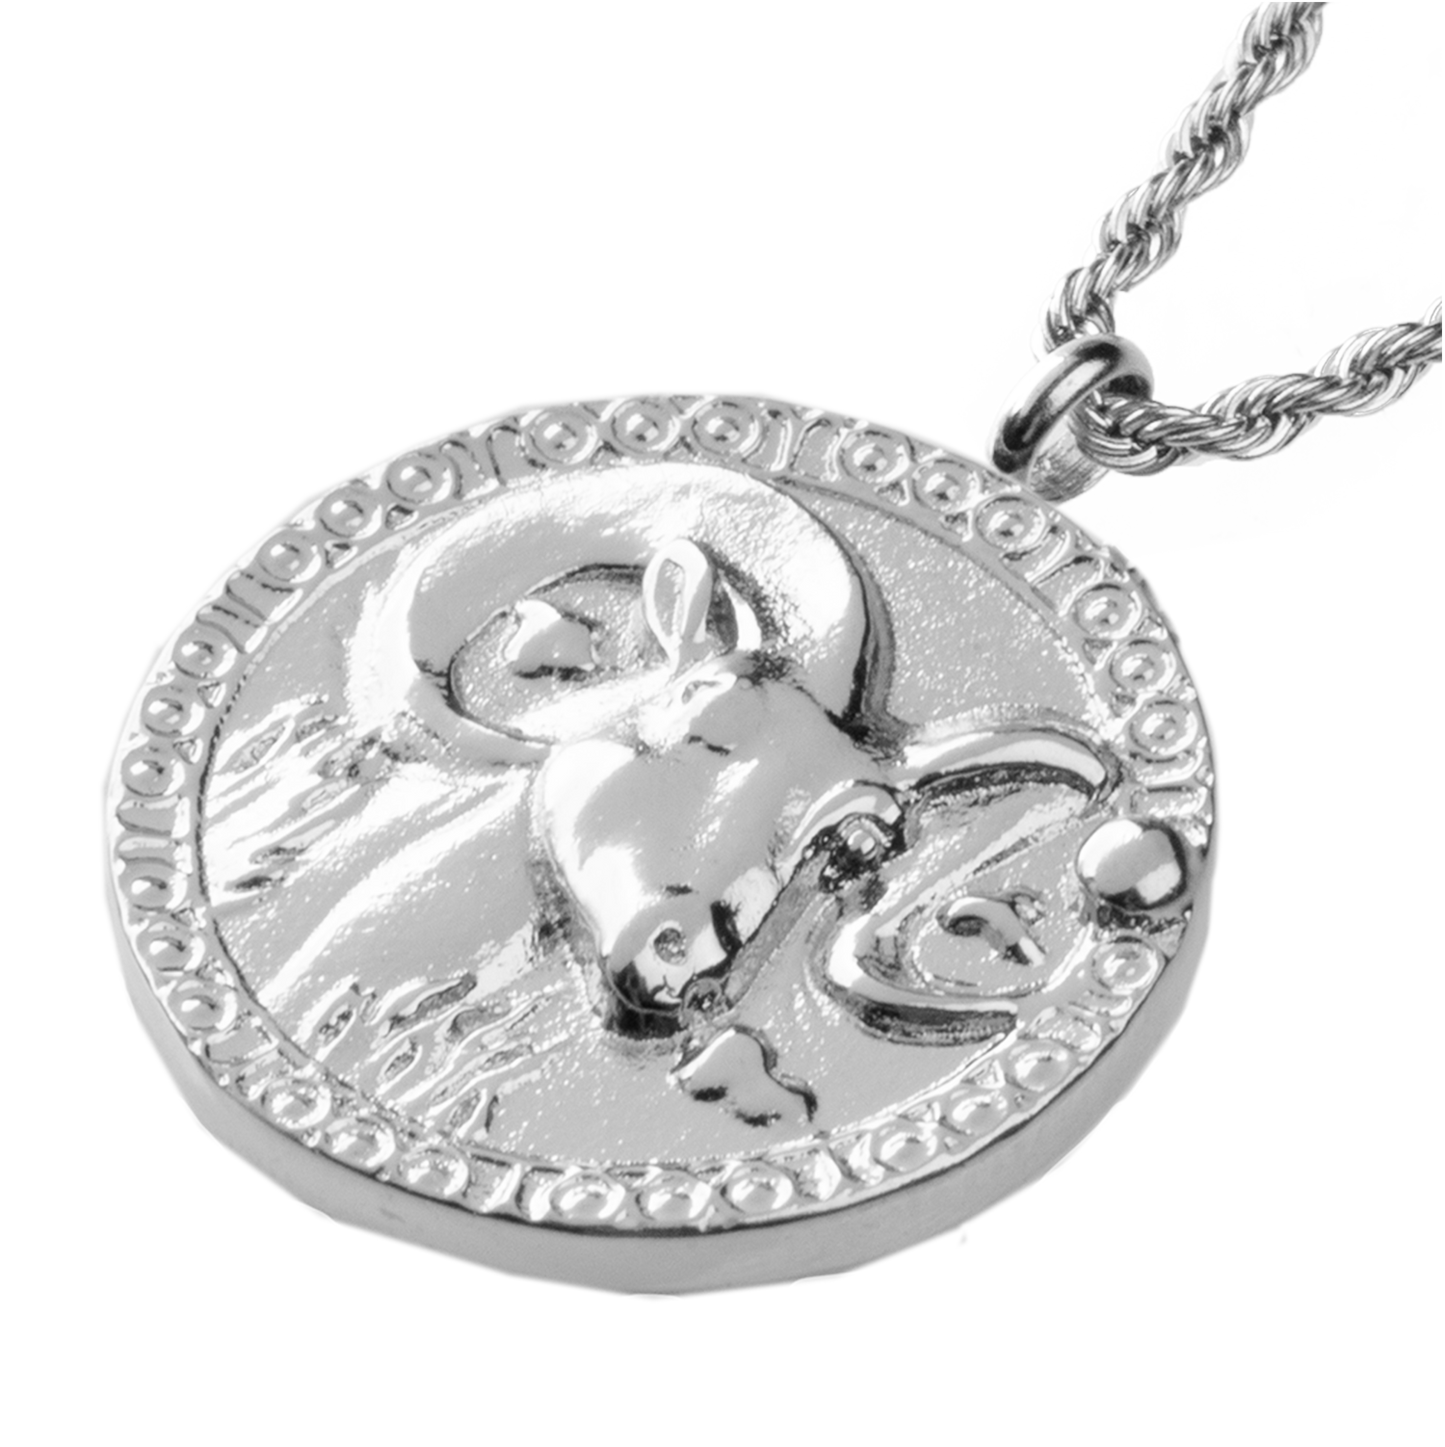 Aries / Widder Necklace Silber